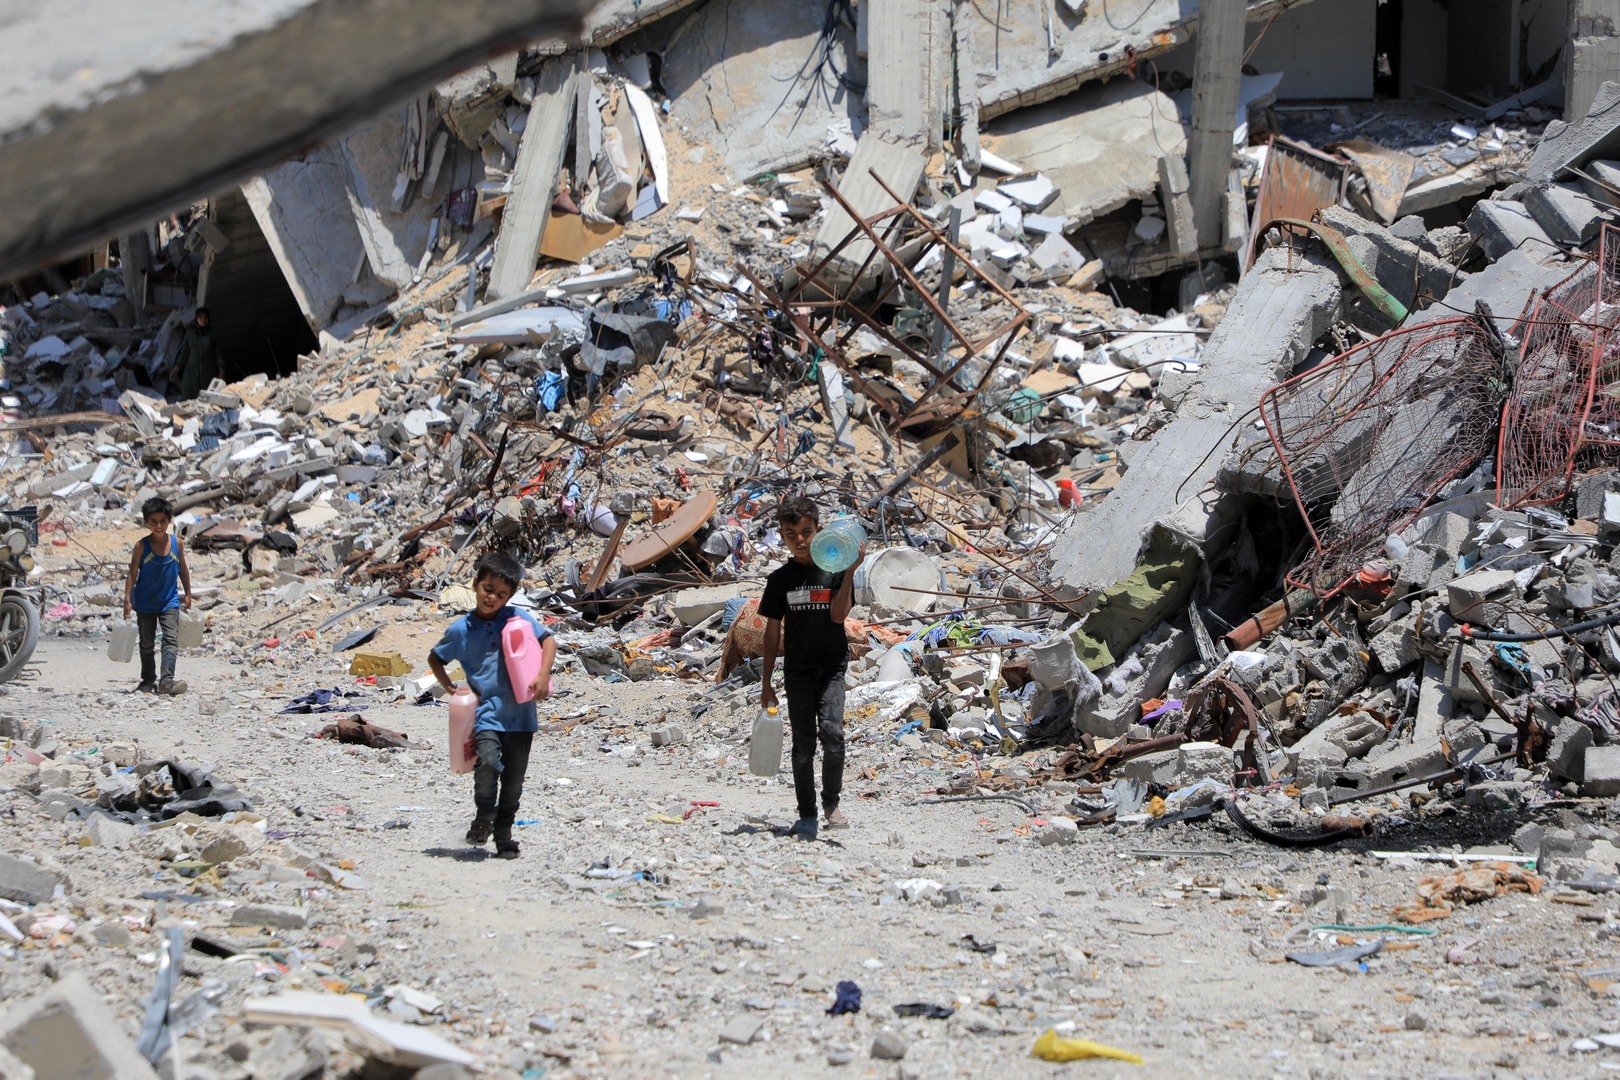 ارتفاع عدد ضحايا سوء التغذية في غزة إلى 37 شخصا بعد وفاة طفل